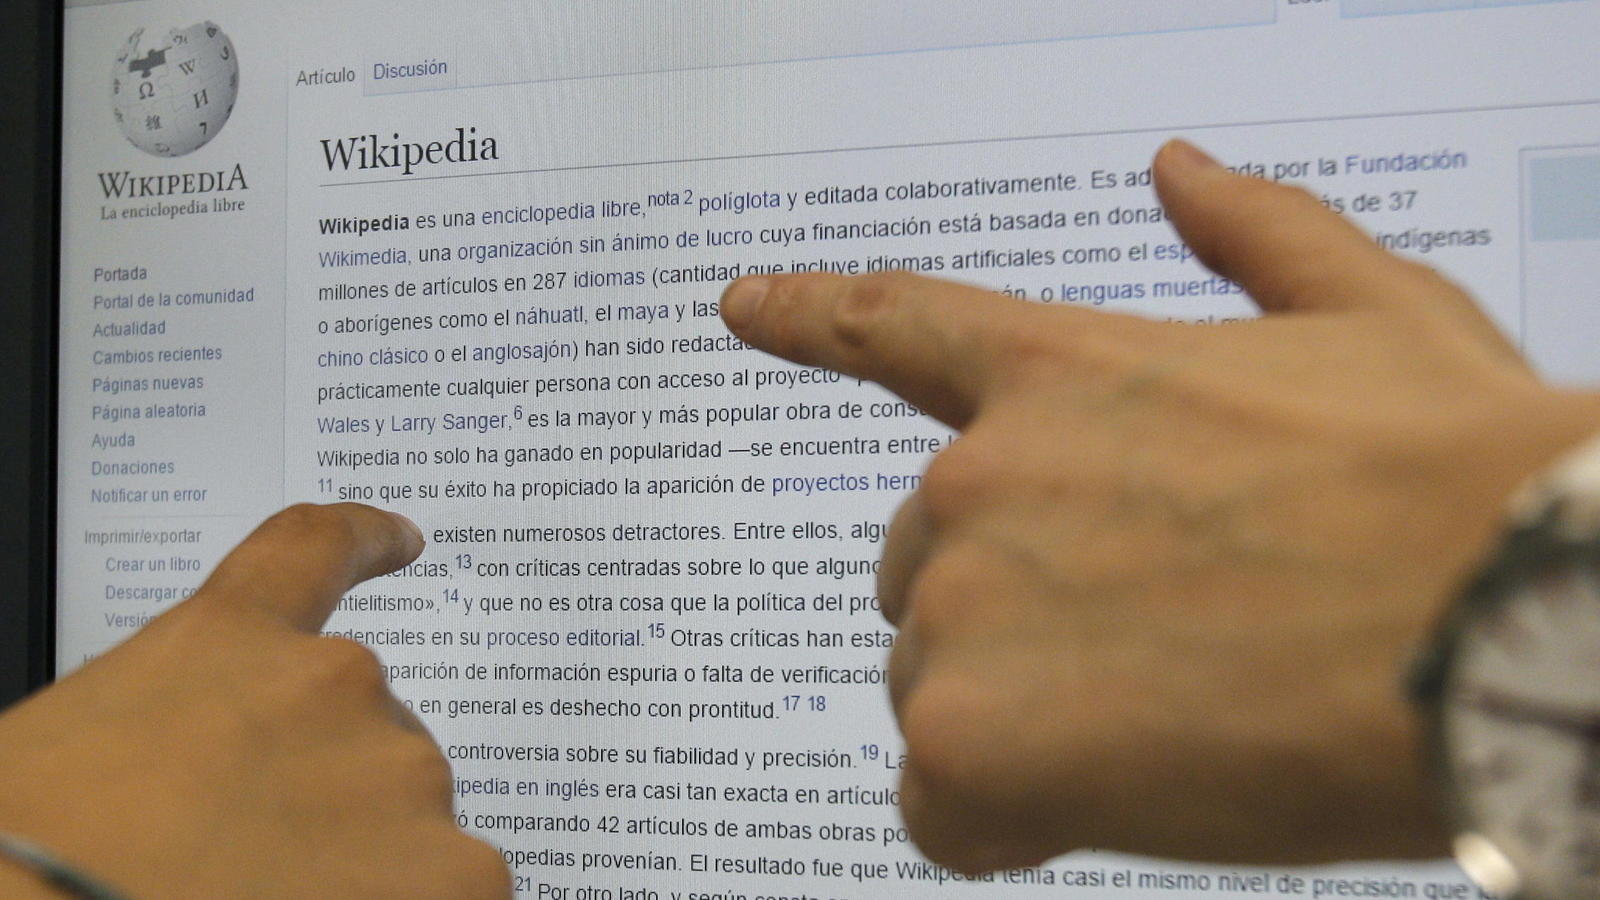 de-venezuela-a-gran-hermano-los-articulos-mas-editados-de-wikipedia-en-espanol (1)